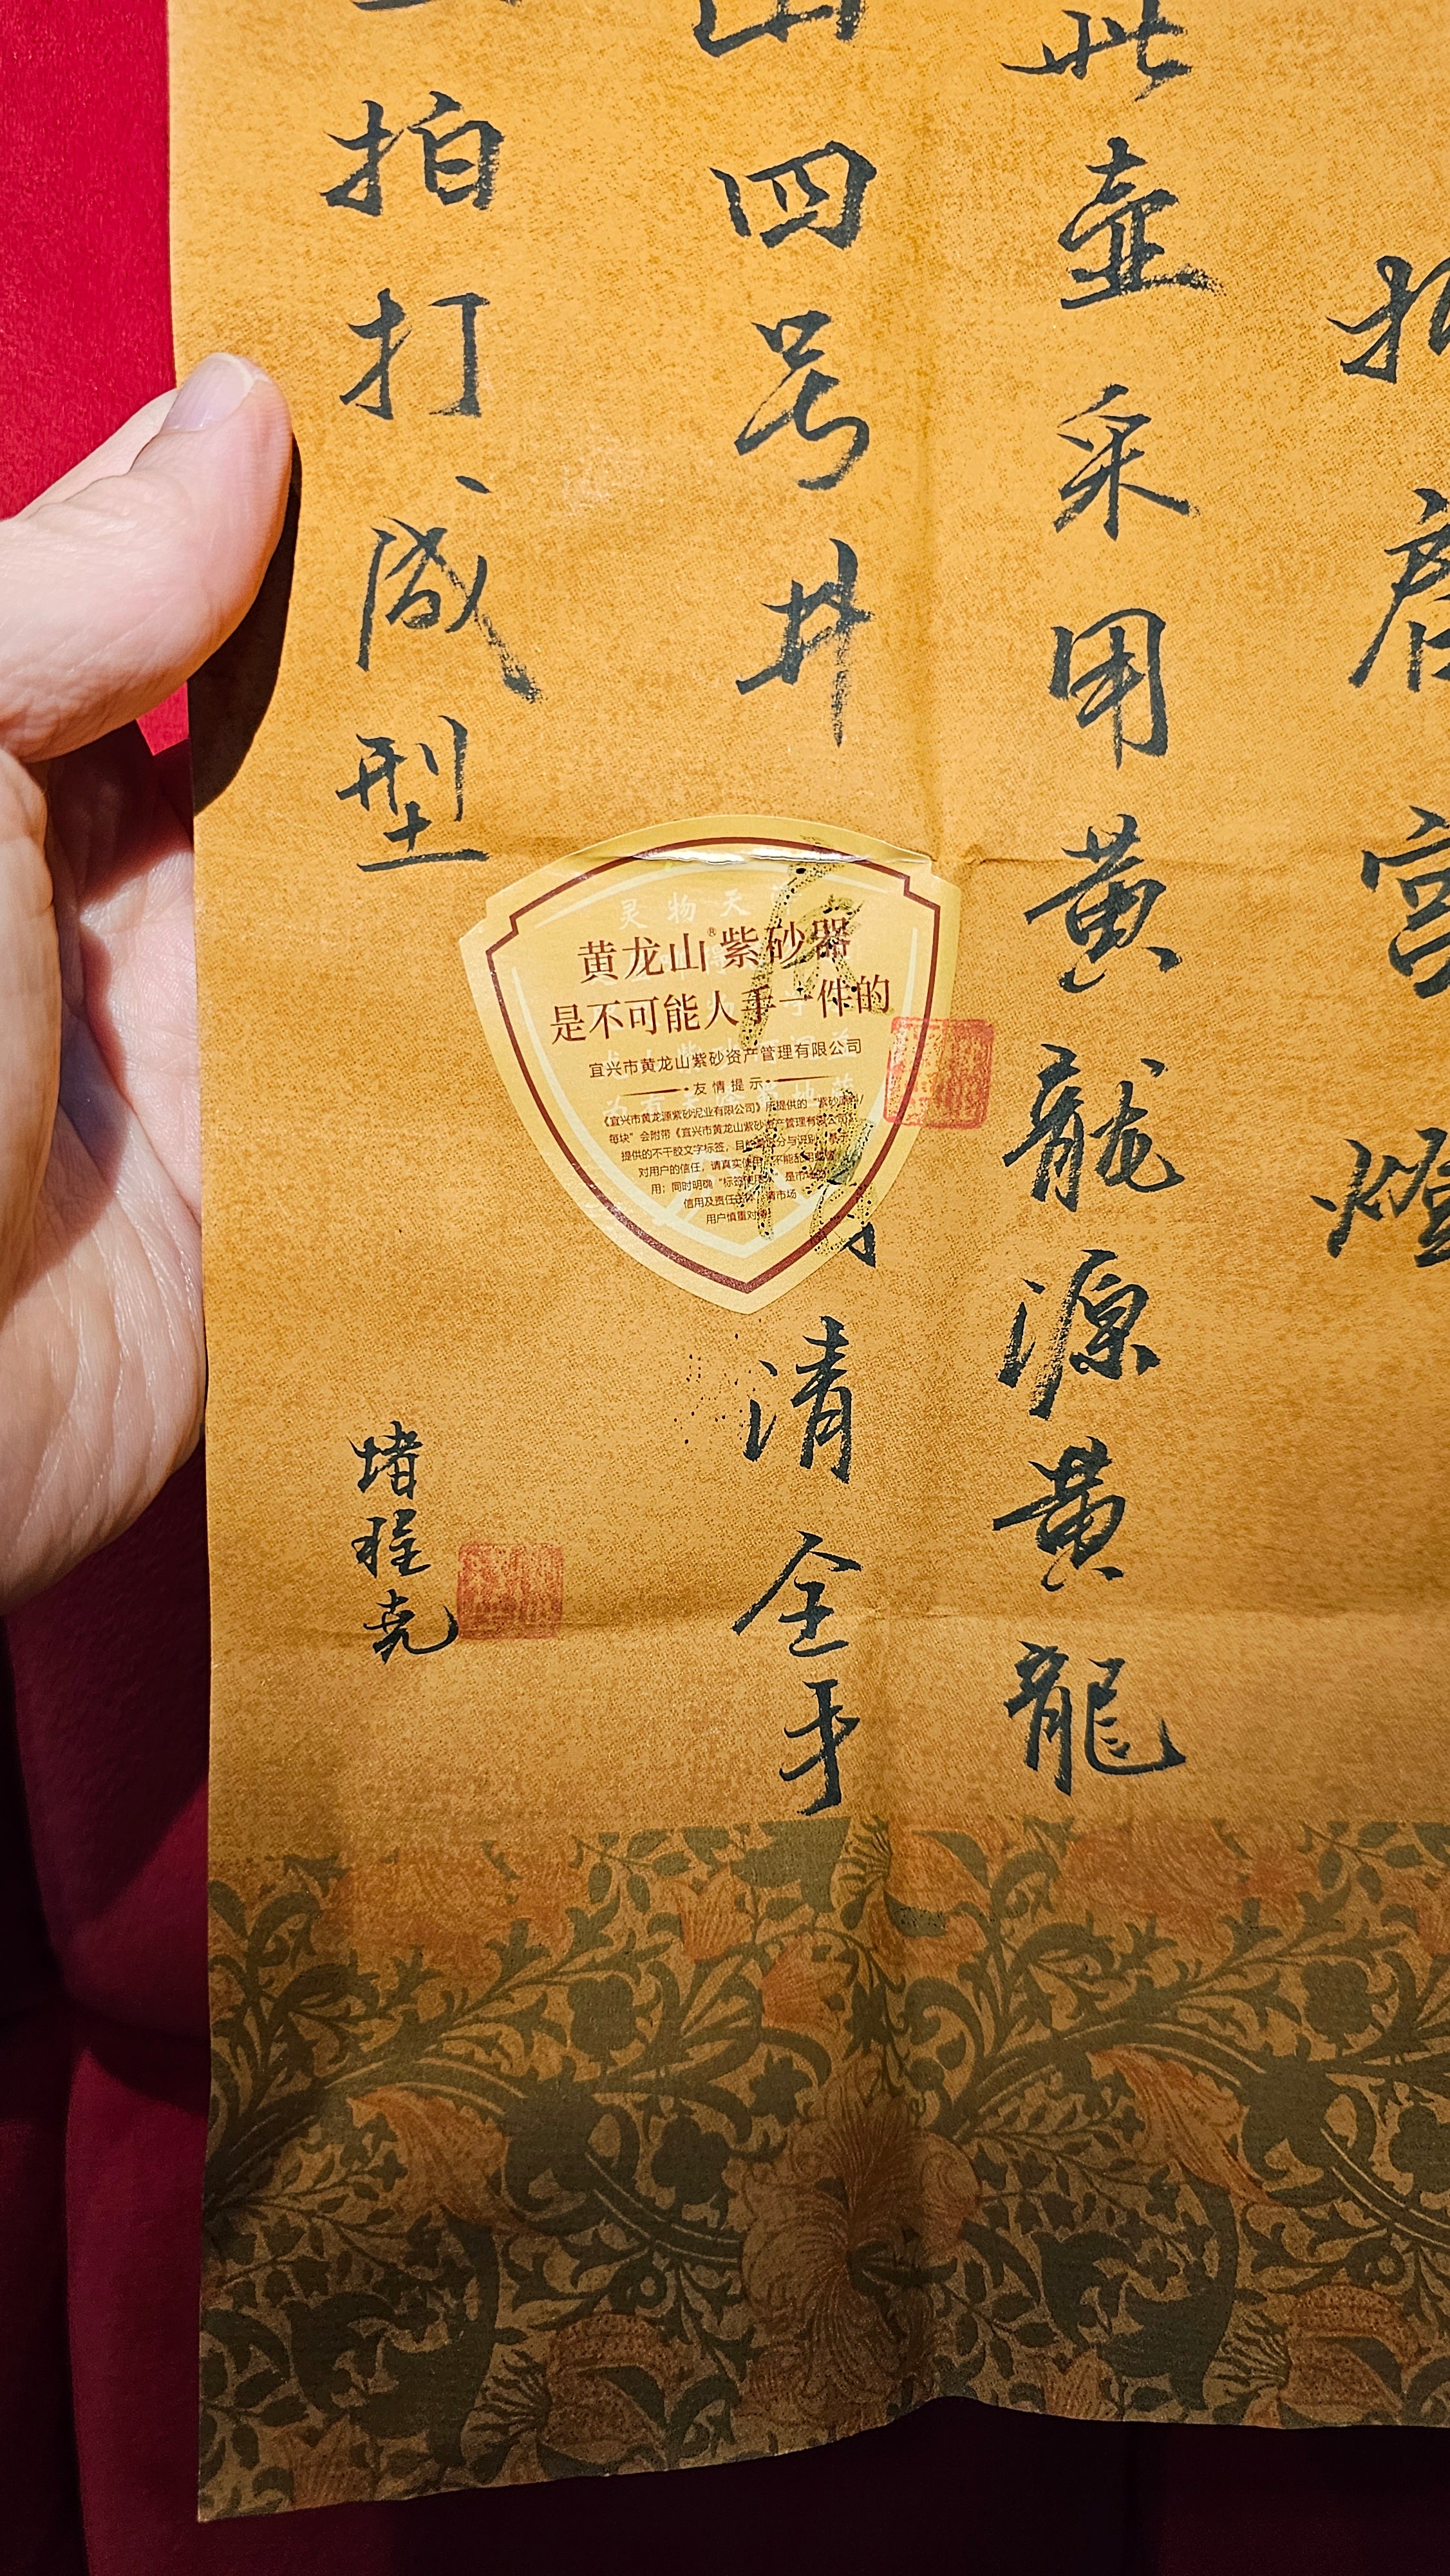 Zhe Jian Gong Deng 折肩宫灯, 200ml, Huang Long Yuan's National-Authenticated Huang Long Shan 4th Quarry Di Cao Qing, by L4 Assoc Master Du Cheng Yao 堵程尧。